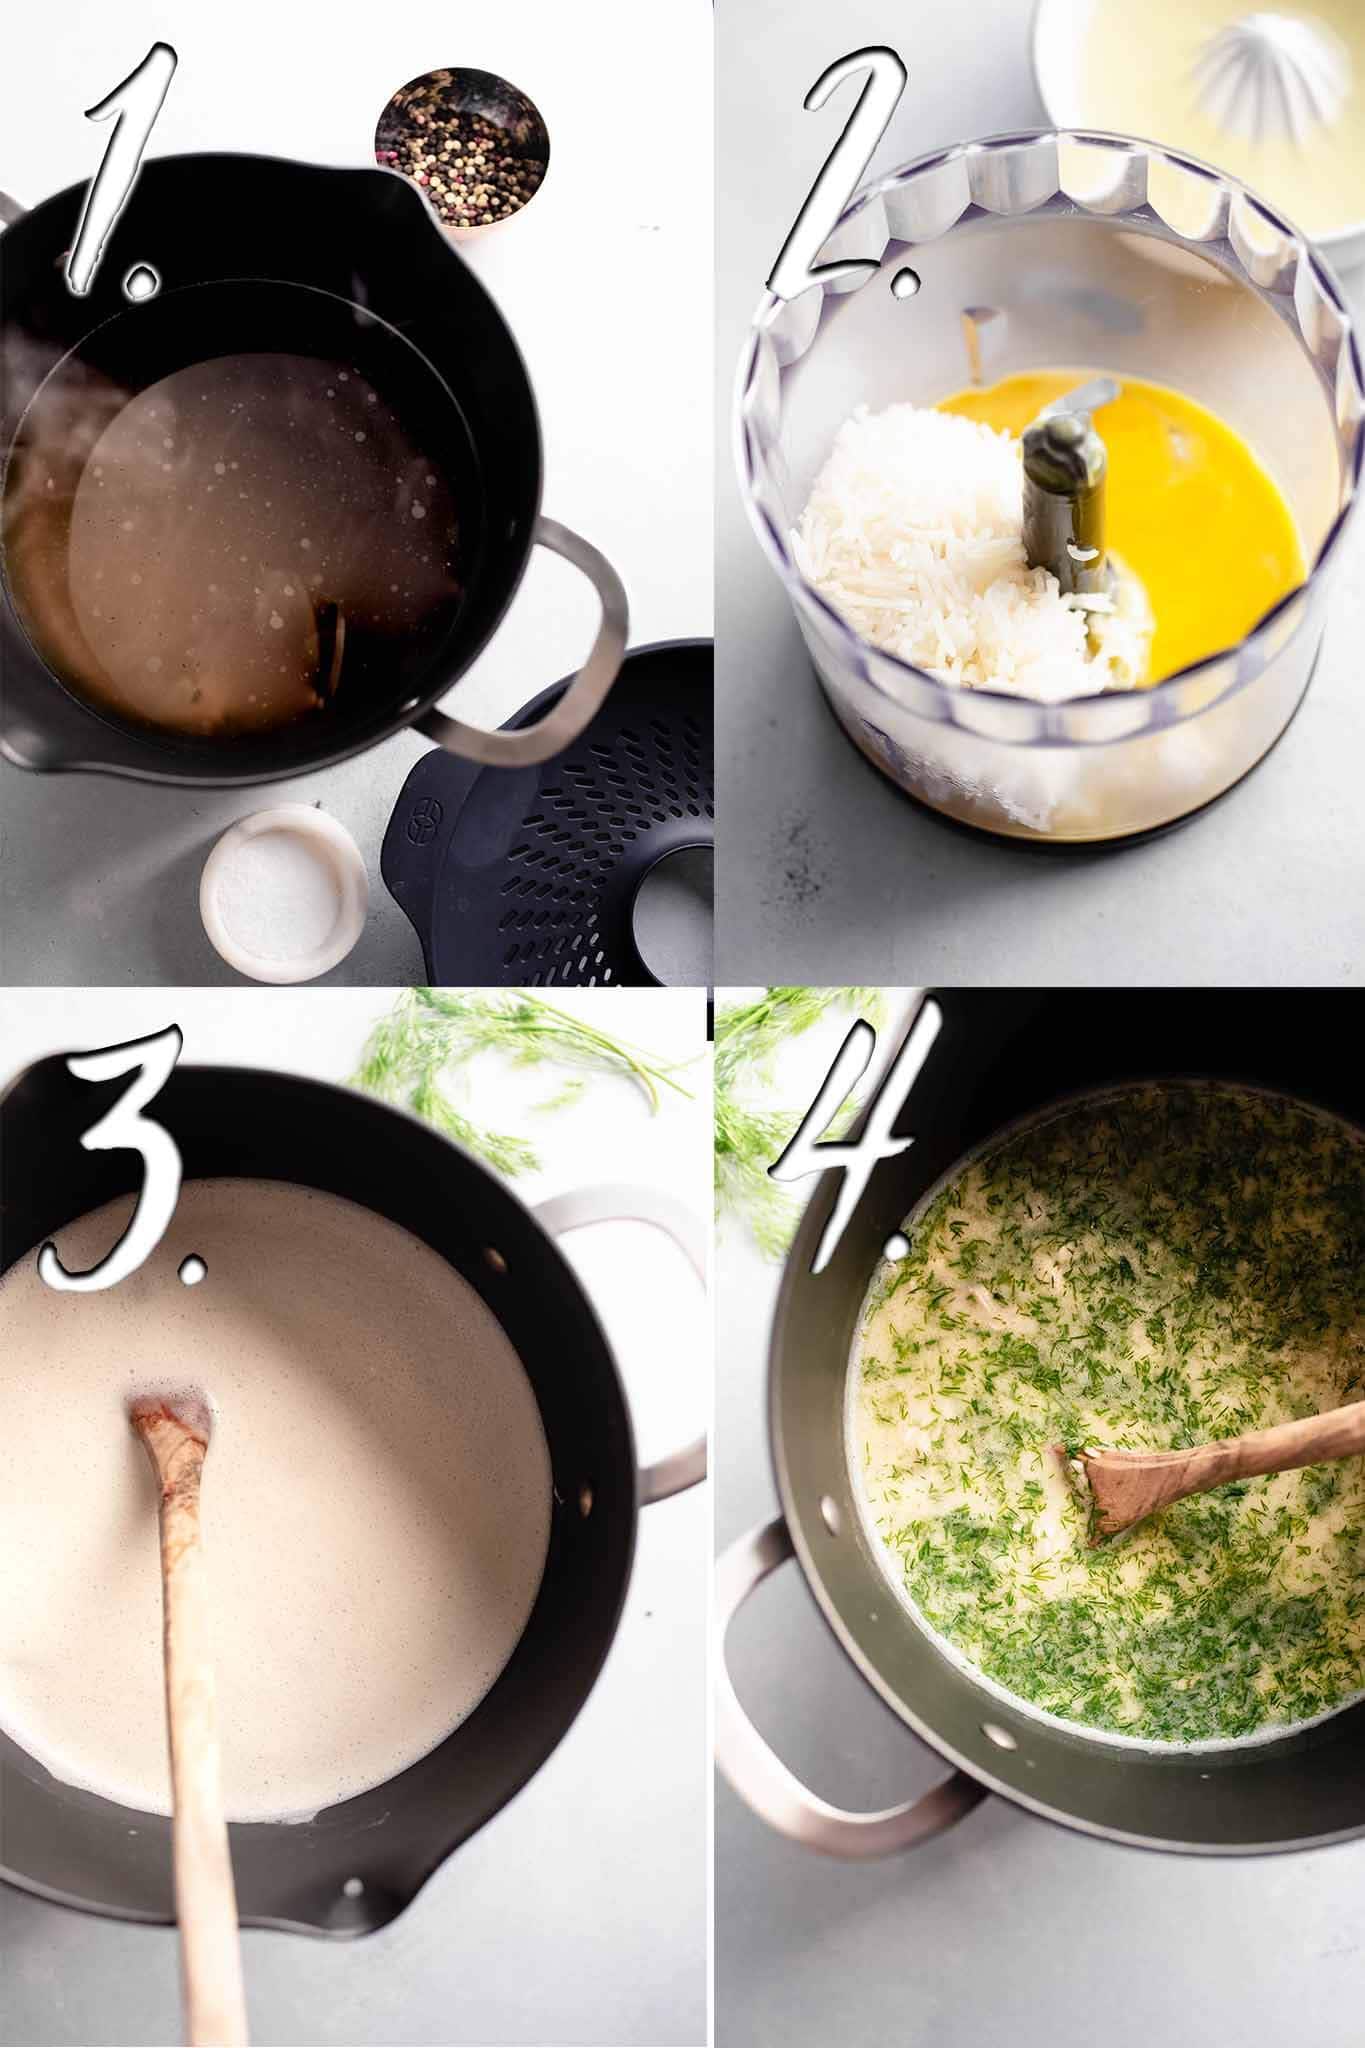 Steps for making avgolemono. 